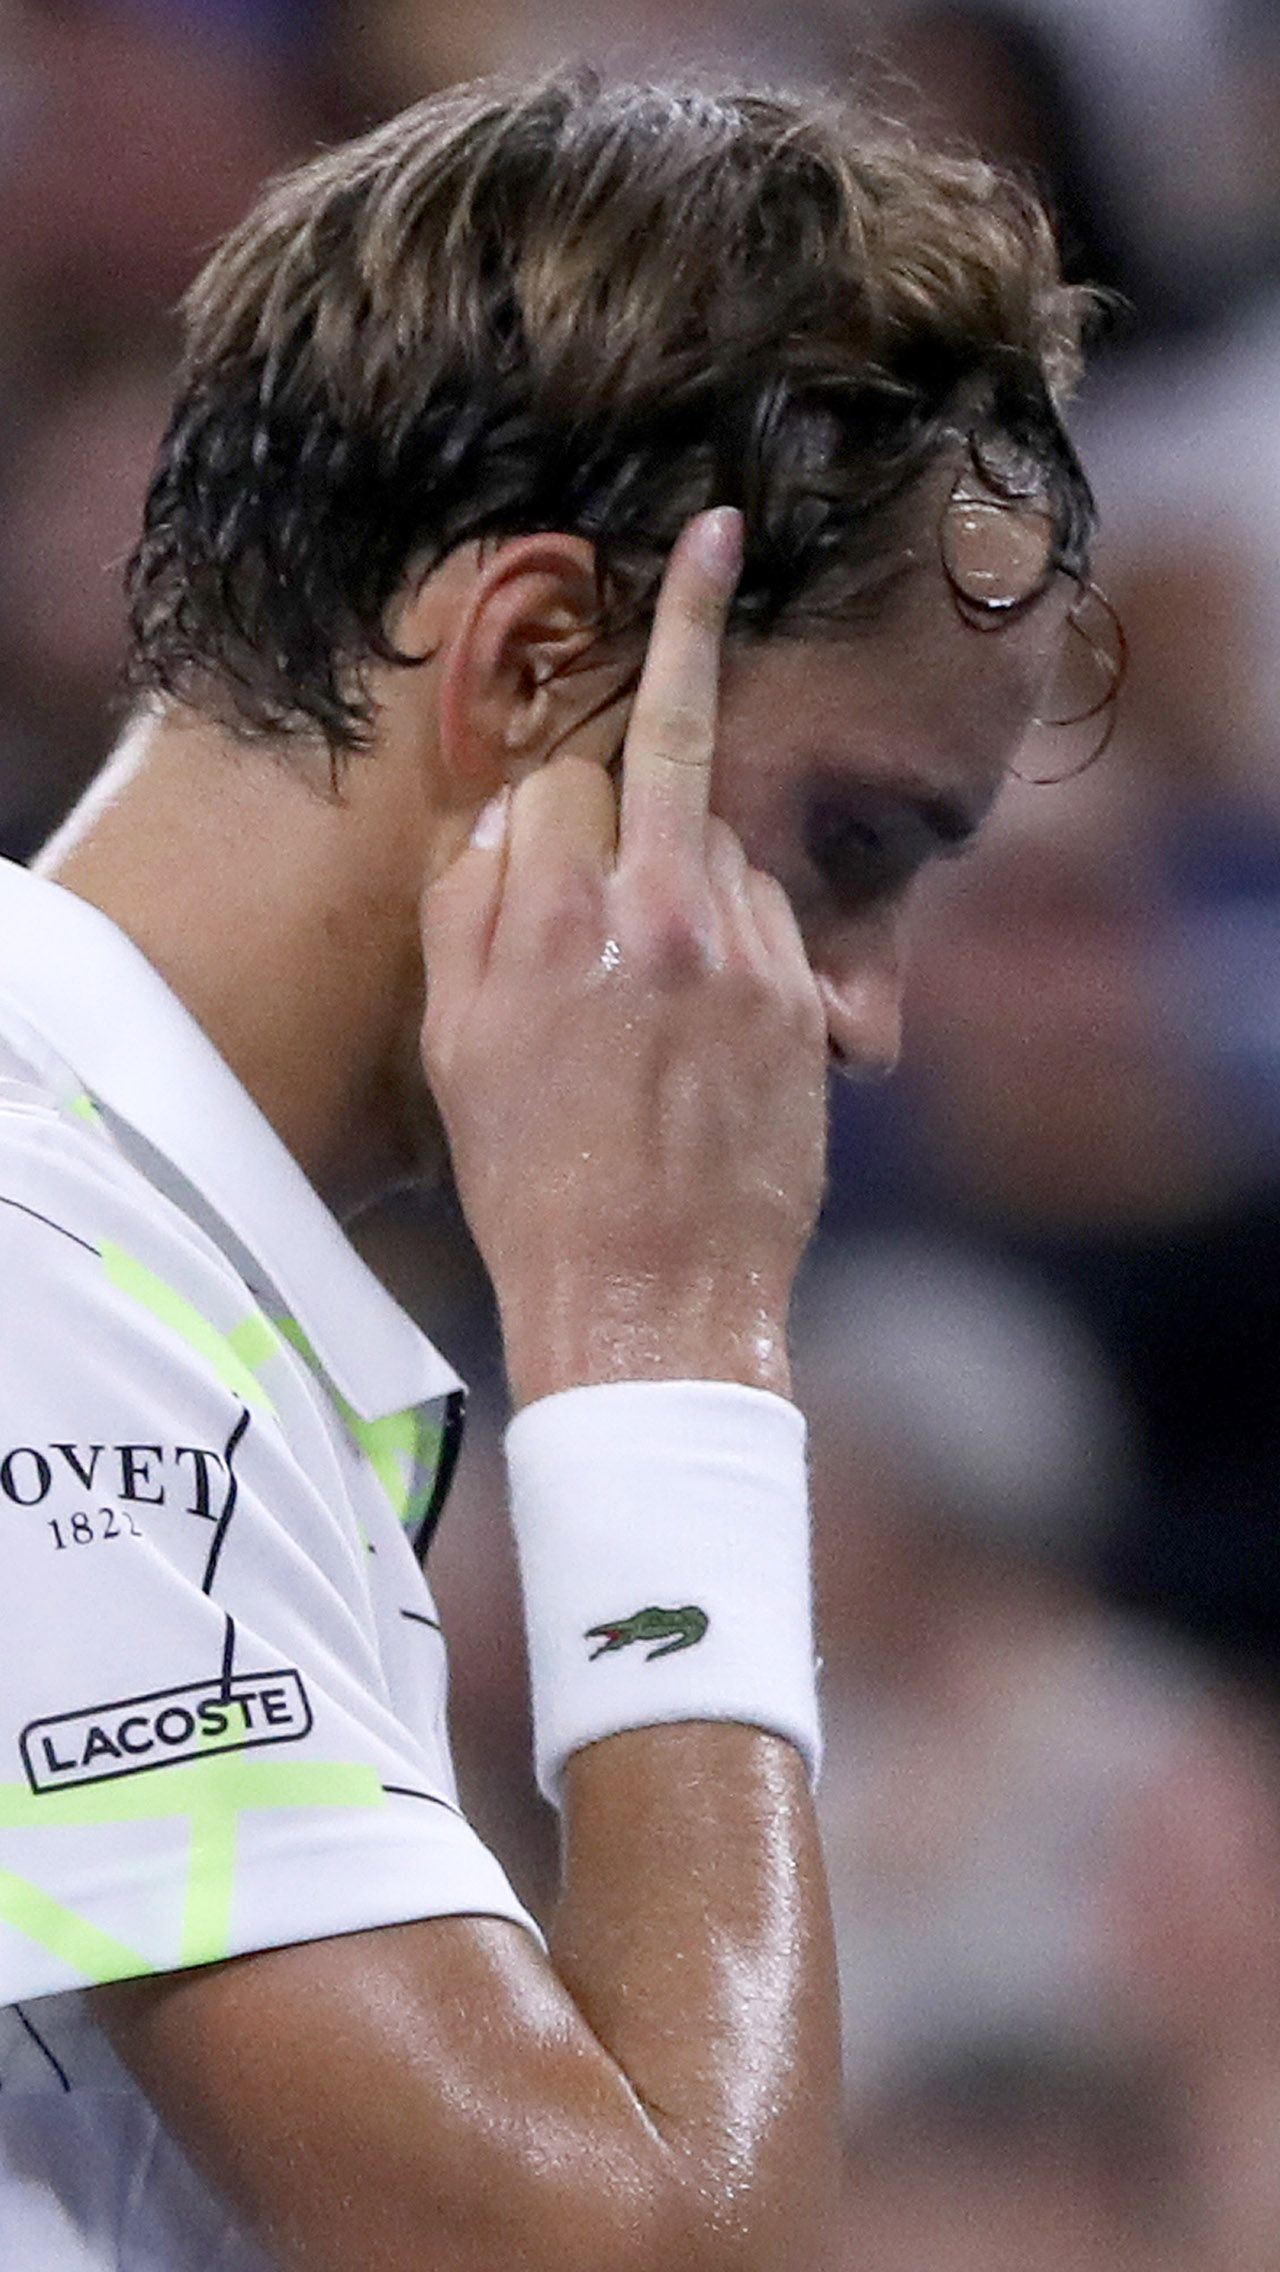 На US Open — 2019 Медведев сорвался, швырнув ракетку в сторону судейской вышки, а затем показал арбитрам и фанатам средний палец.